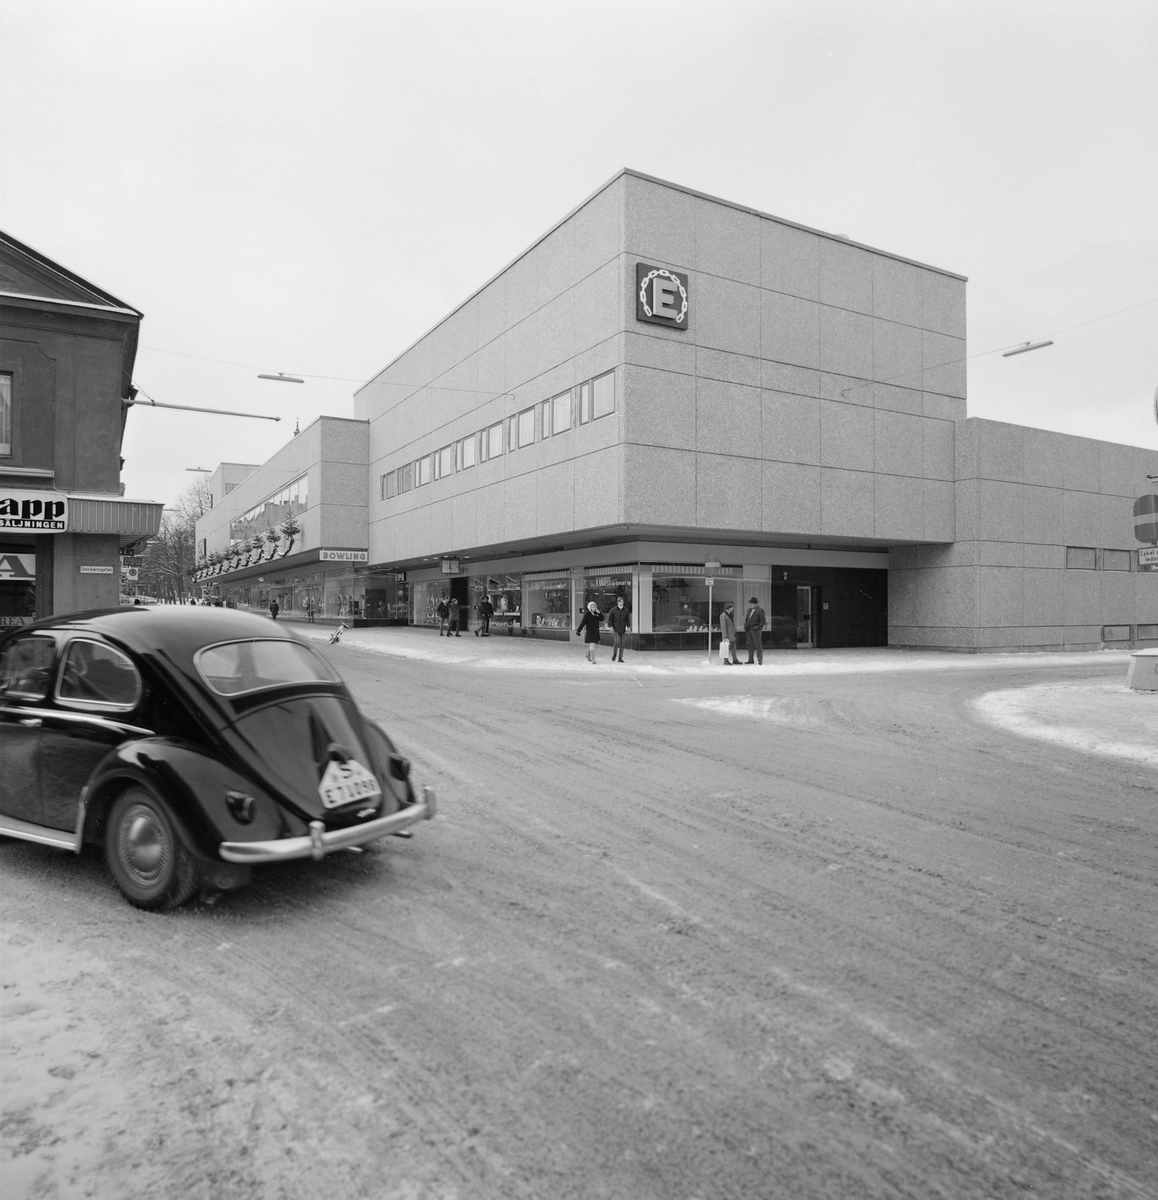 År 1966 flyttade varuhuskedjan EPA in i nya lokaler i Linköping. Vid tiden för bilden har det gått några år och inom kort kommer kedjan köpas upp av Åhlénskoncernen och namnet ändras till Tempo.